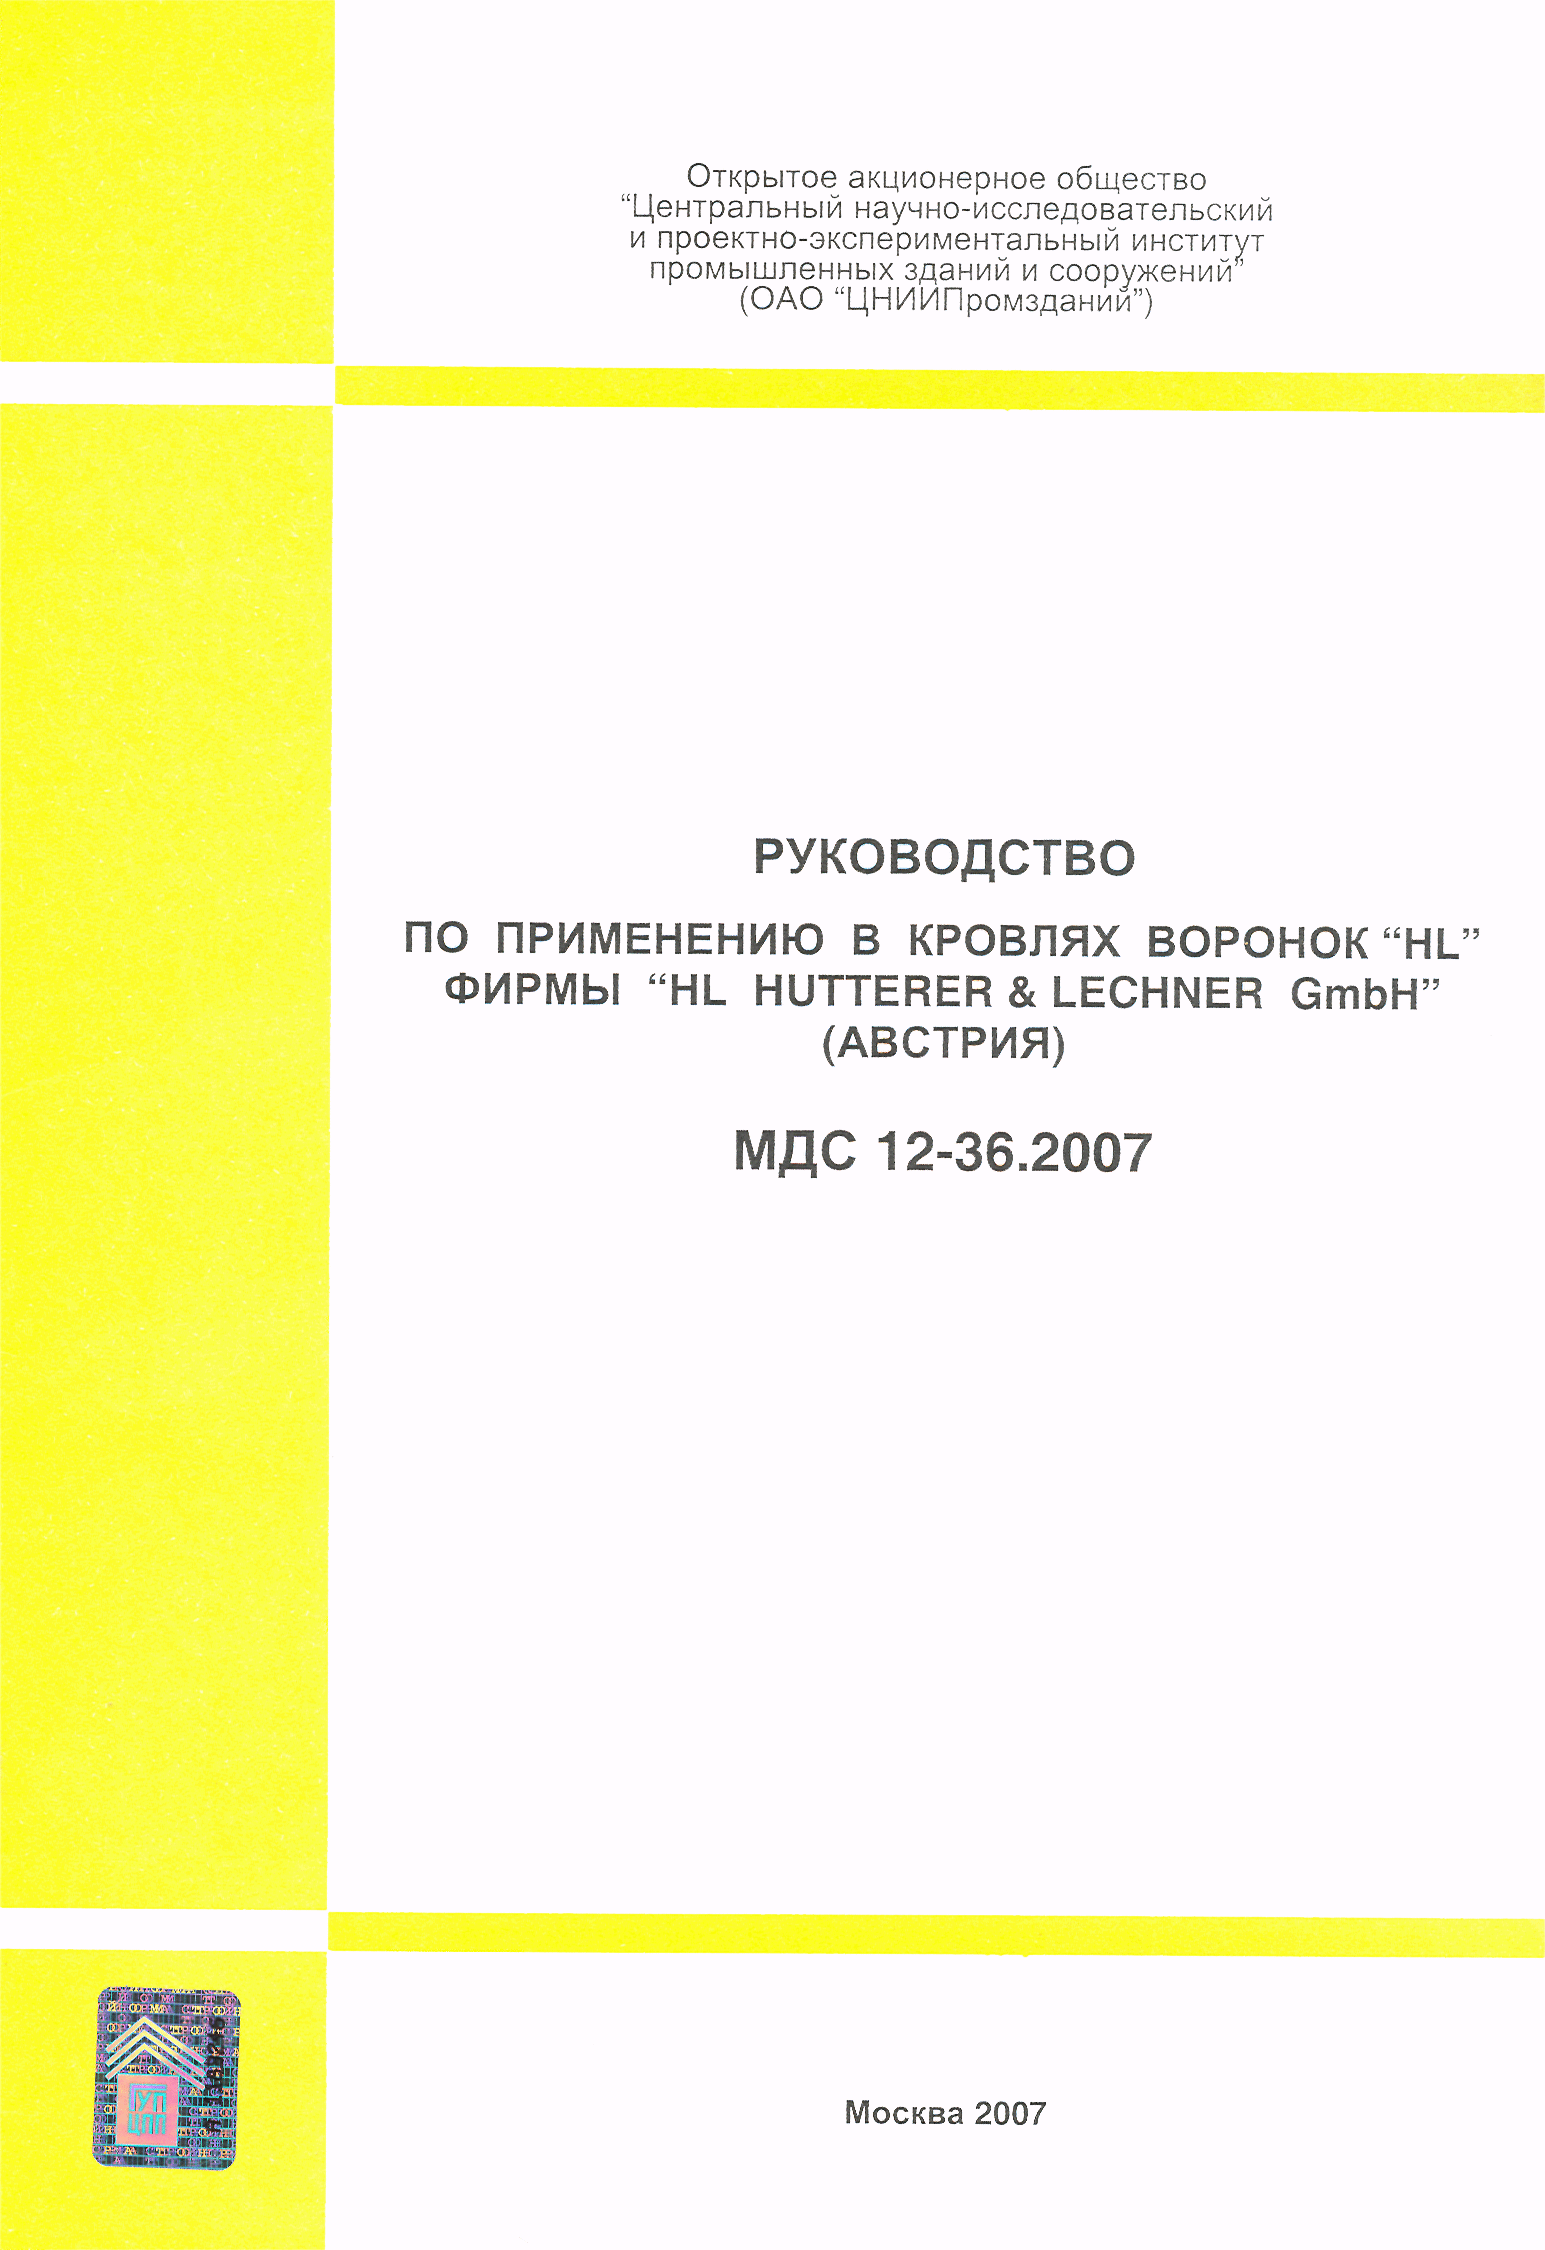 МДС 12-36.2007